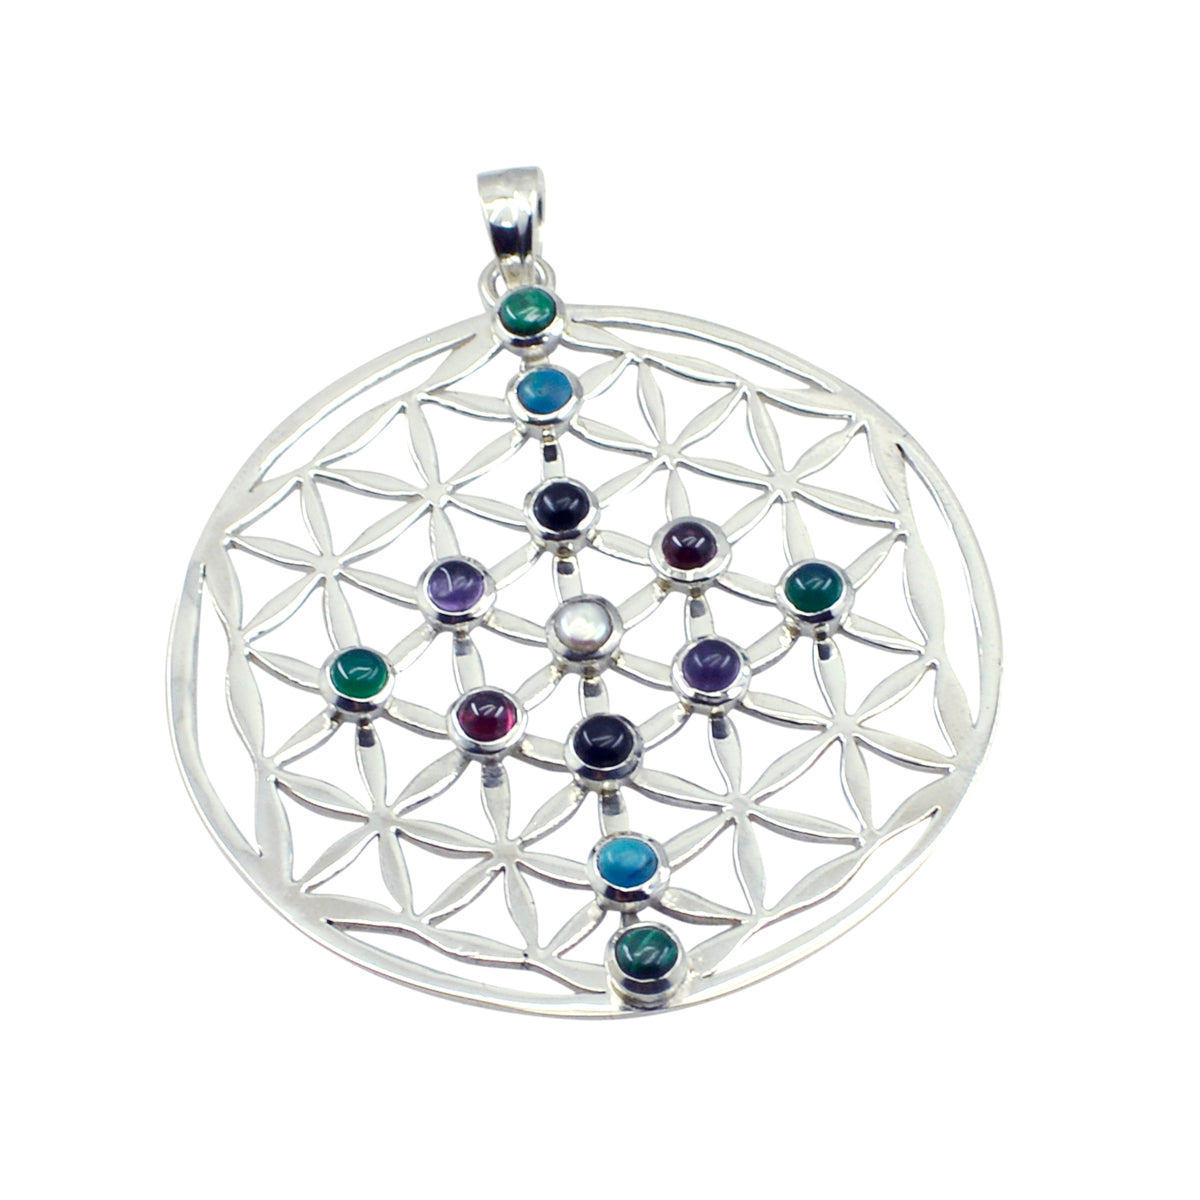 RIYO привлекательный круглый кабошон с драгоценными камнями, разноцветный кулон из стерлингового серебра с несколькими камнями, подарок для женщин